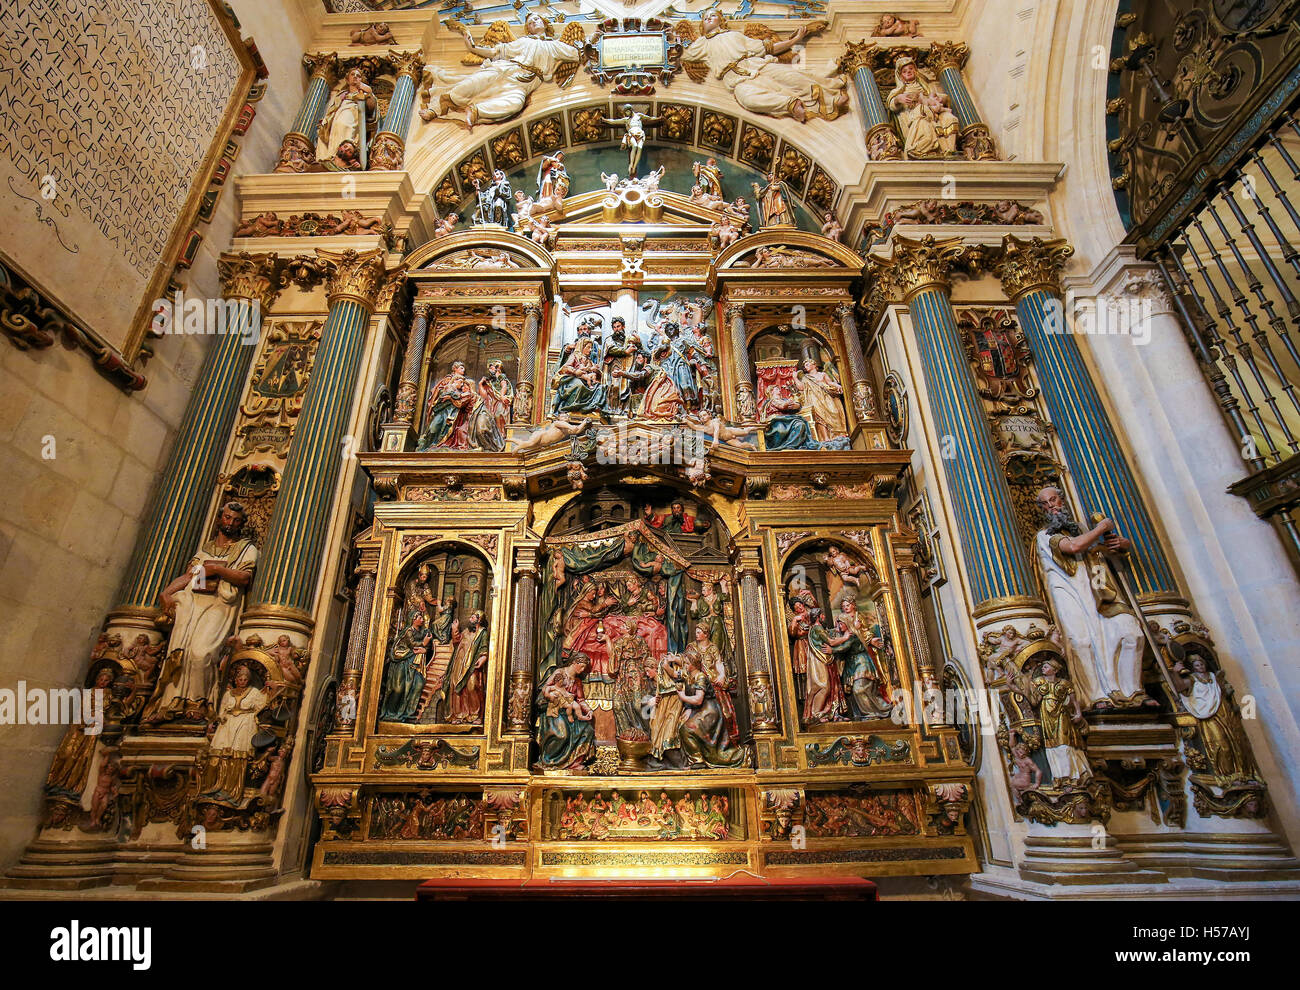 Altarbild in der Kathedrale von Burgos, Kastilien, Spanien. Stockfoto